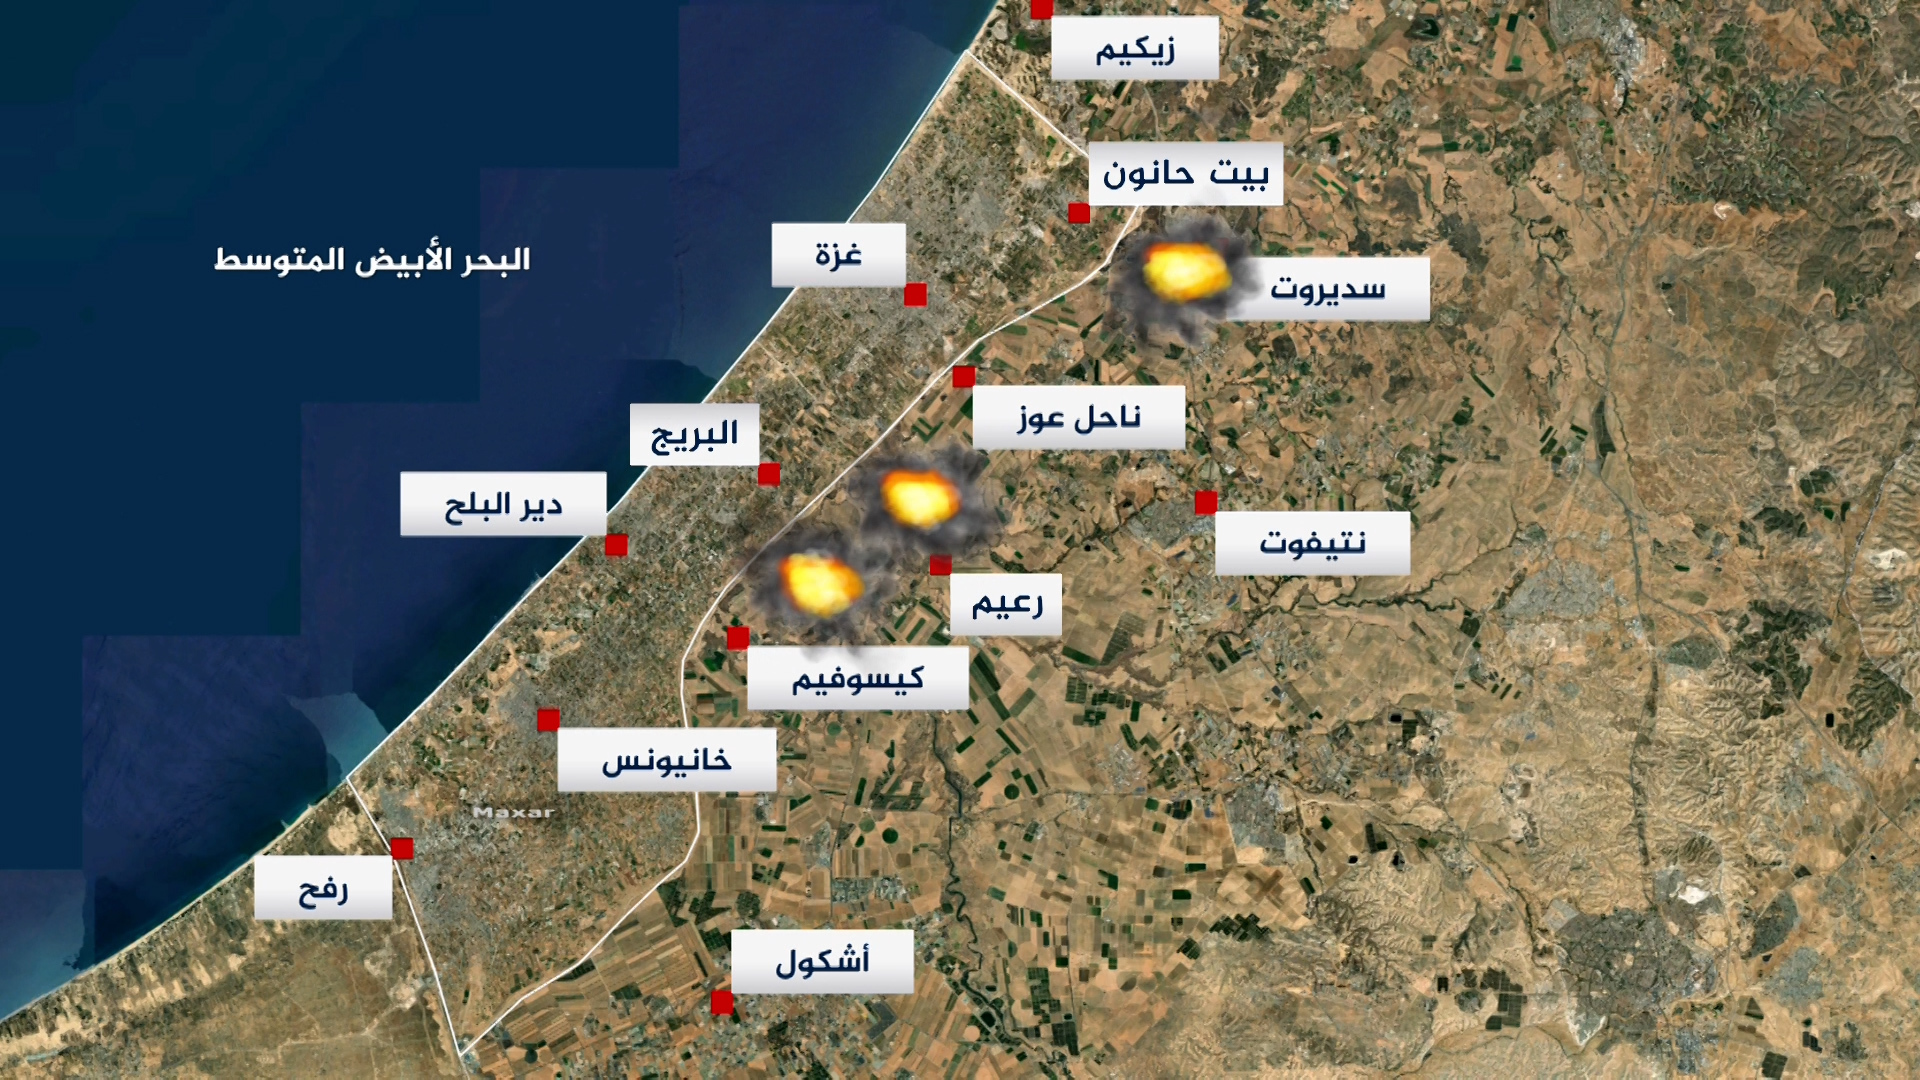 خطة إسرائيلية من 3 مستويات تشمل منطقة عازلة بغزة بعد الحرب